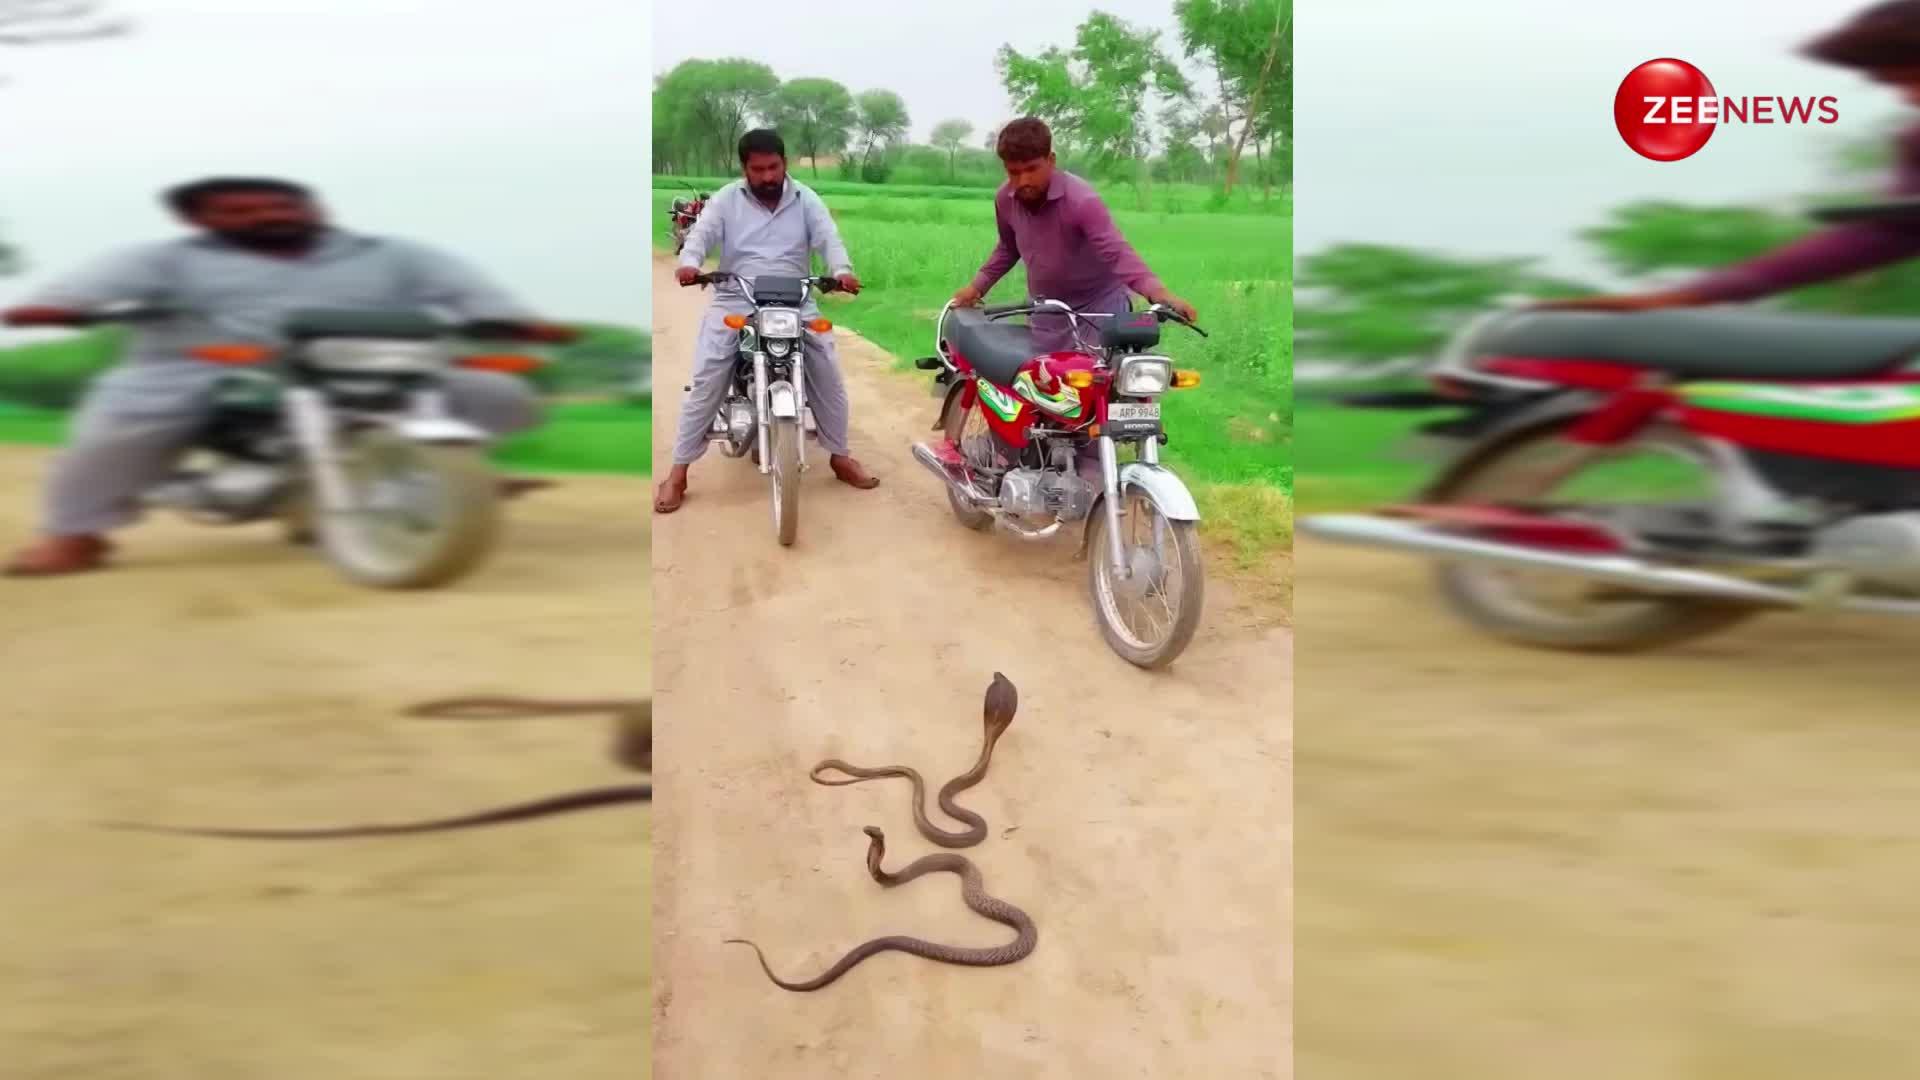 Cobra सांप ने रोका 2 बाइक सवार लोगों का रास्ता, डर की वजह से छूटा उनका पसीना